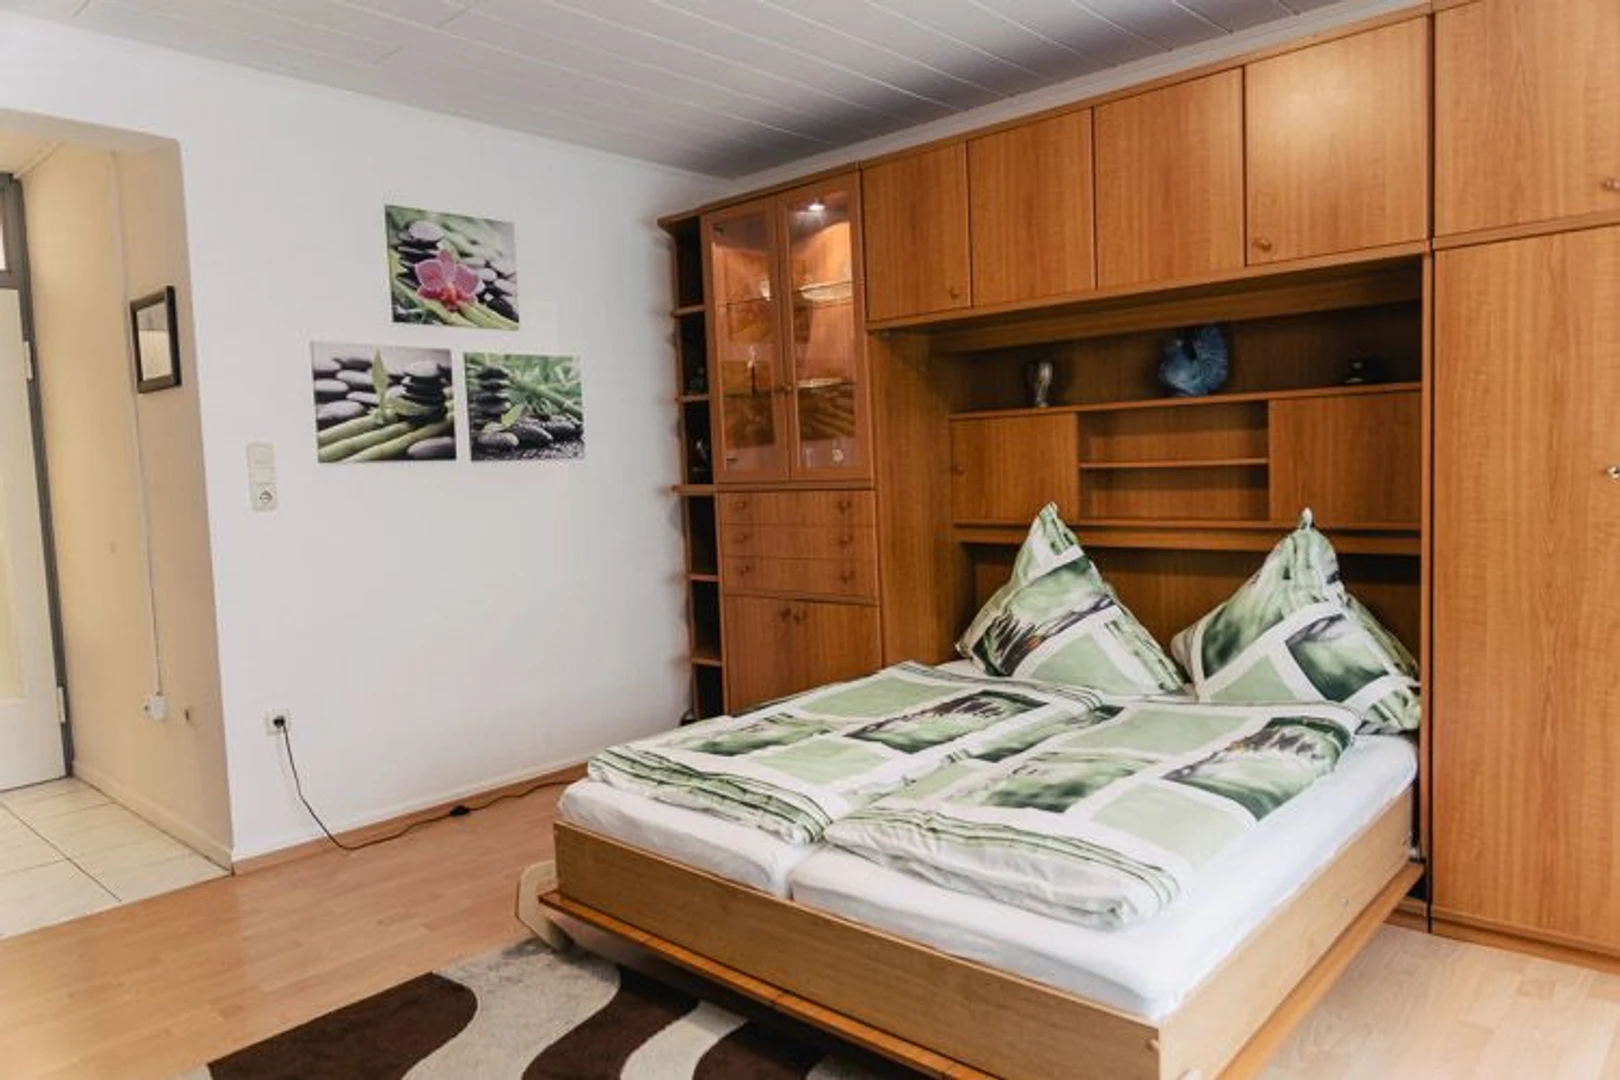 Chambre à louer avec lit double Darmstadt